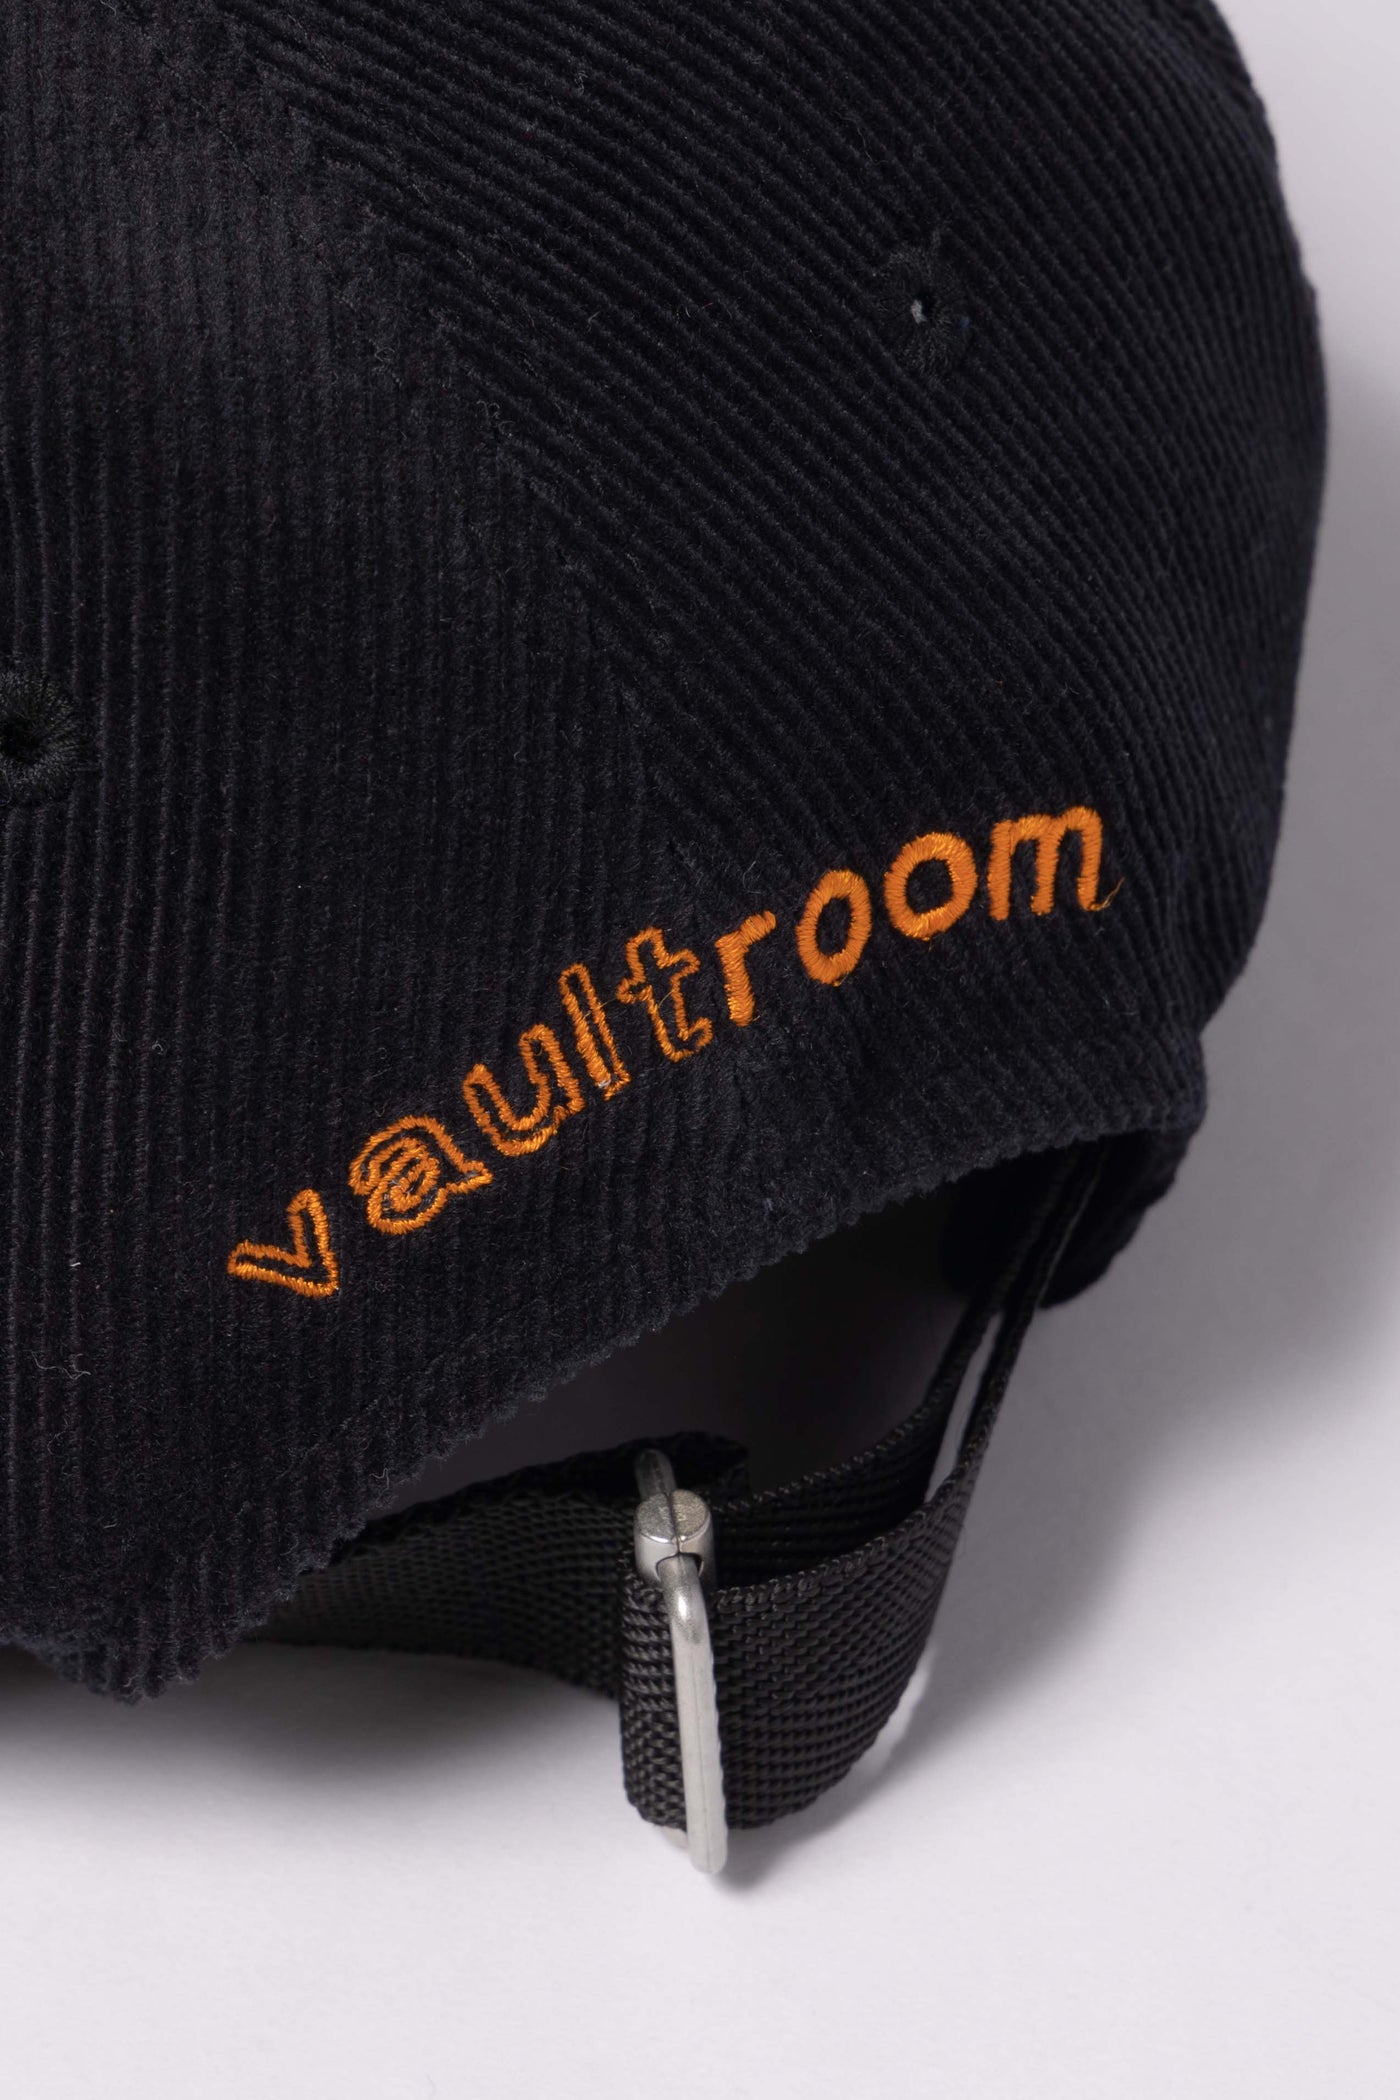 vaultroom × tokyovitamin CORDUROY CAP / BLACK – VAULTROOM